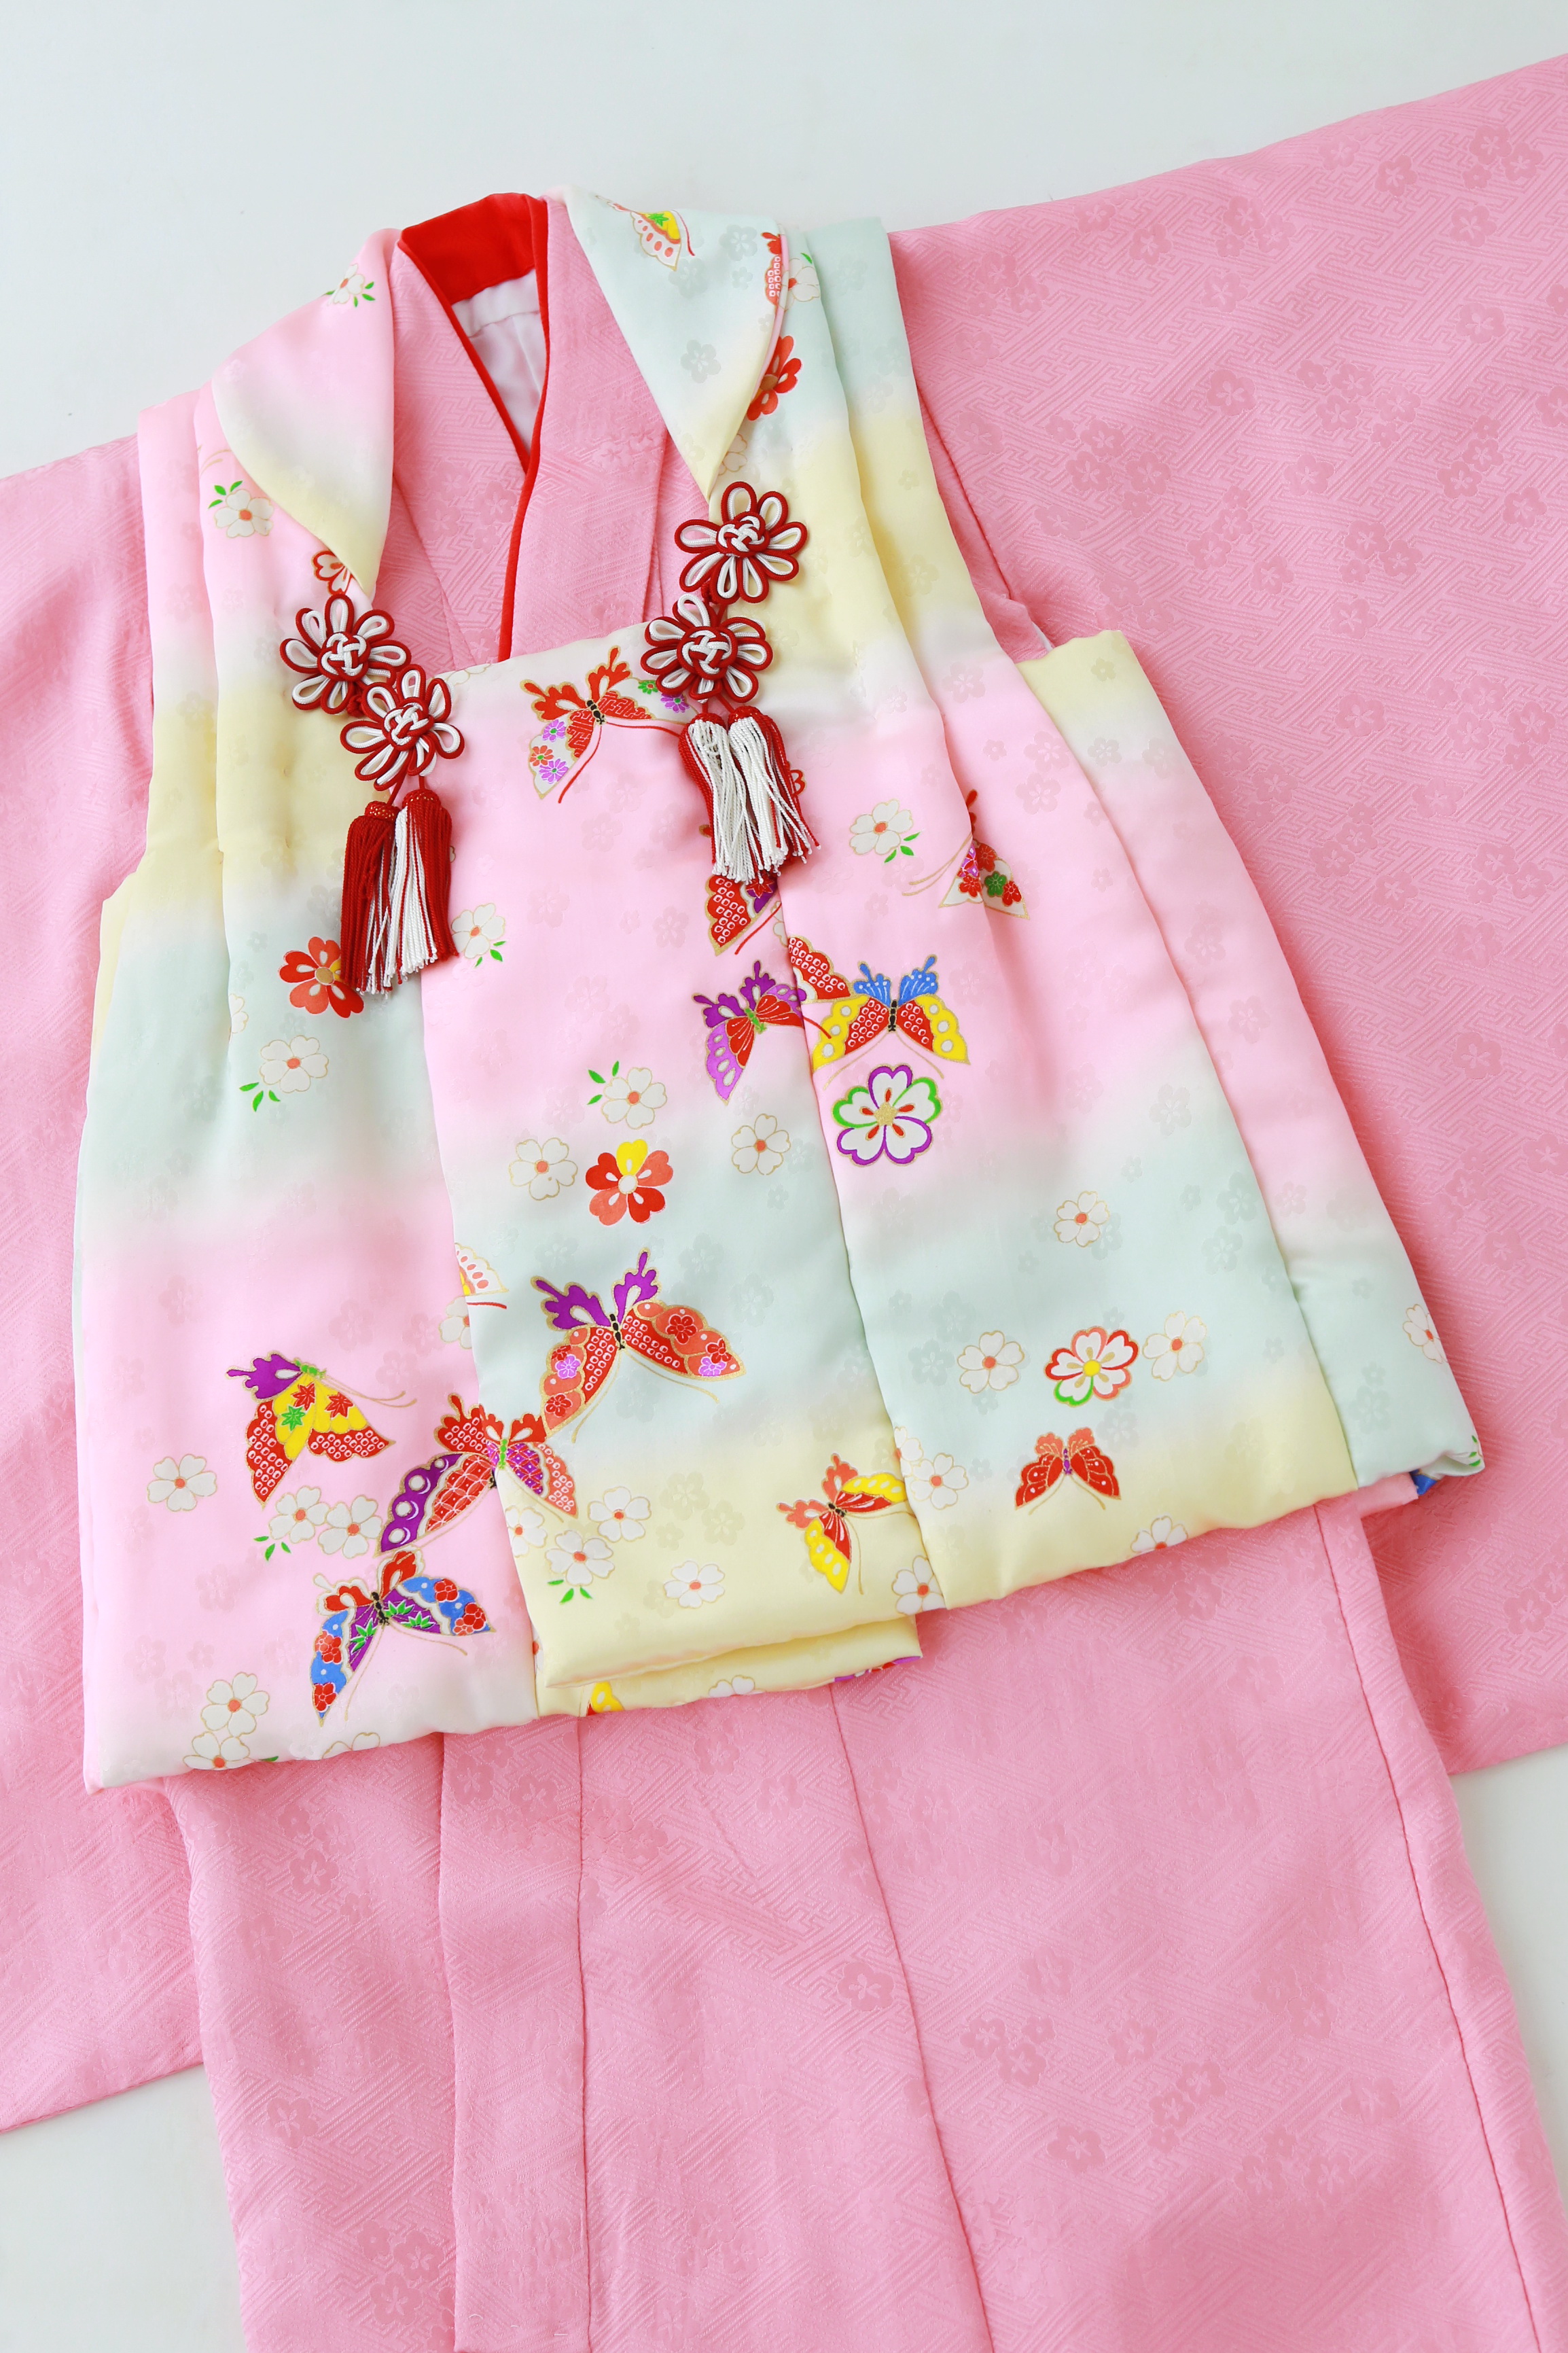 ピンクのお着物と蝶々柄の被布の組み合わせが、柔らかい色味で統一されたお着物です。